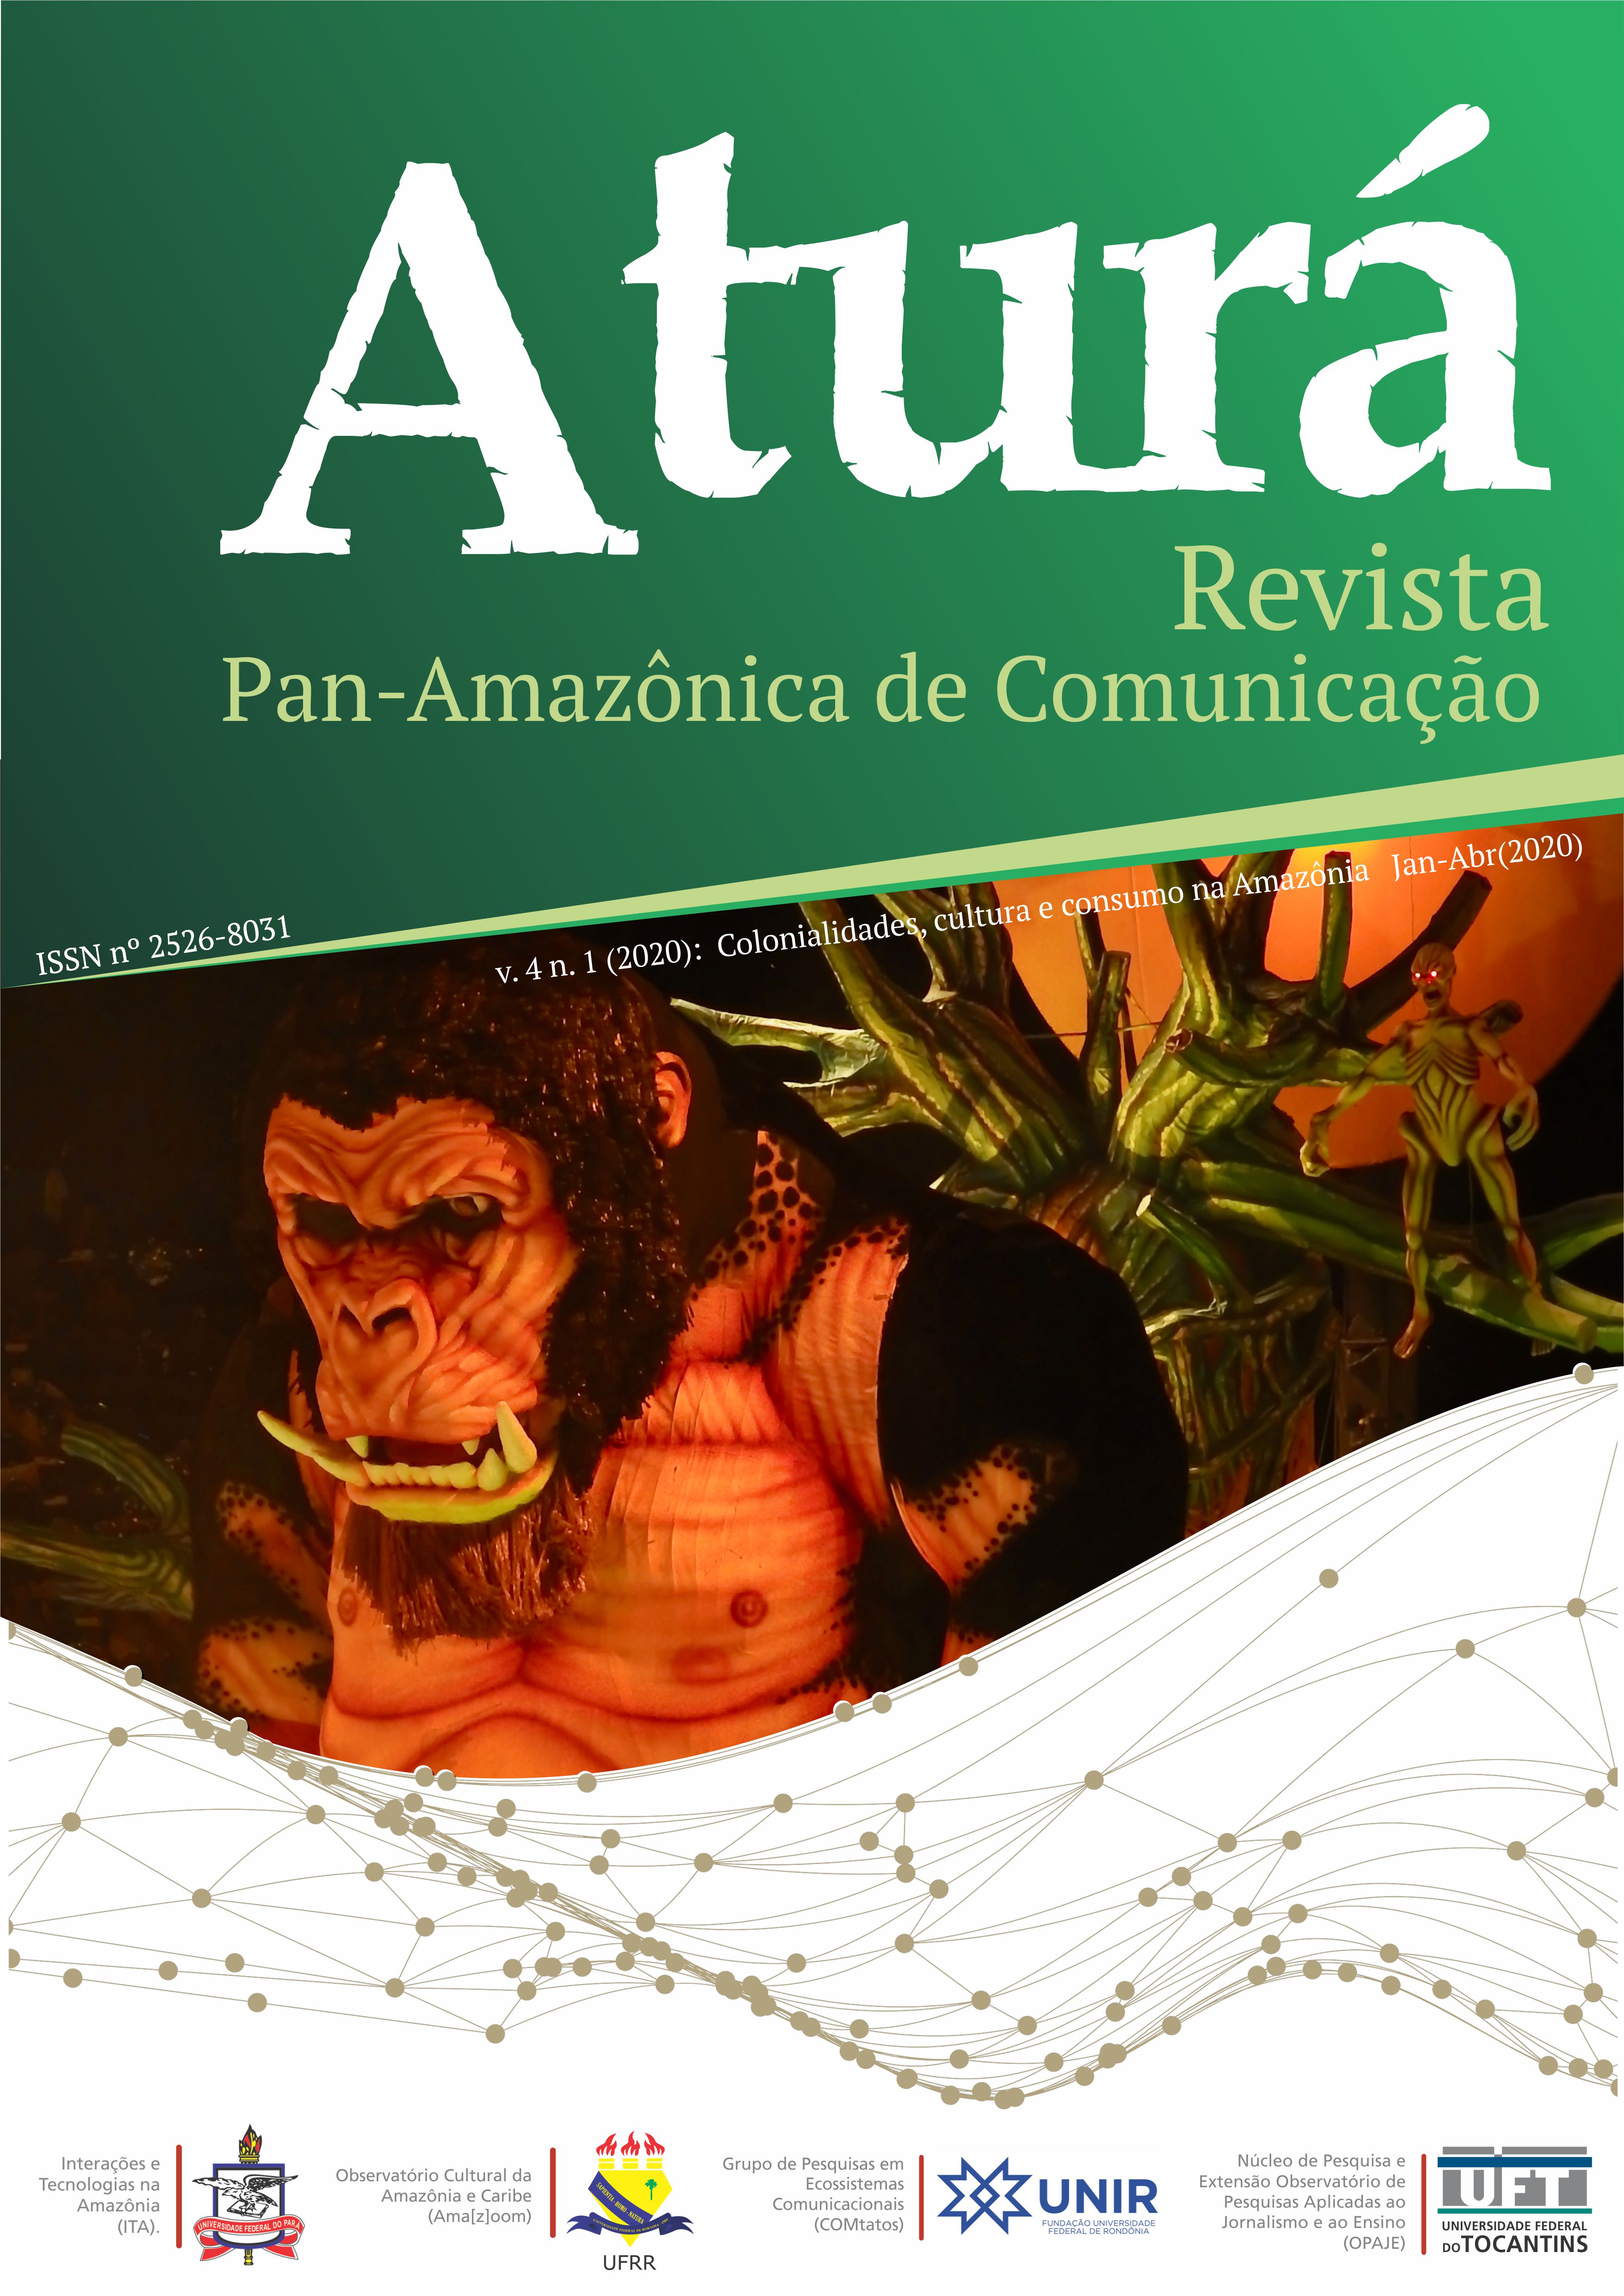 					Visualizar v. 4 n. 1 (2020): Colonialidades, jornalismo, cultura e consumo na Amazônia Jan-Abr (2020)
				